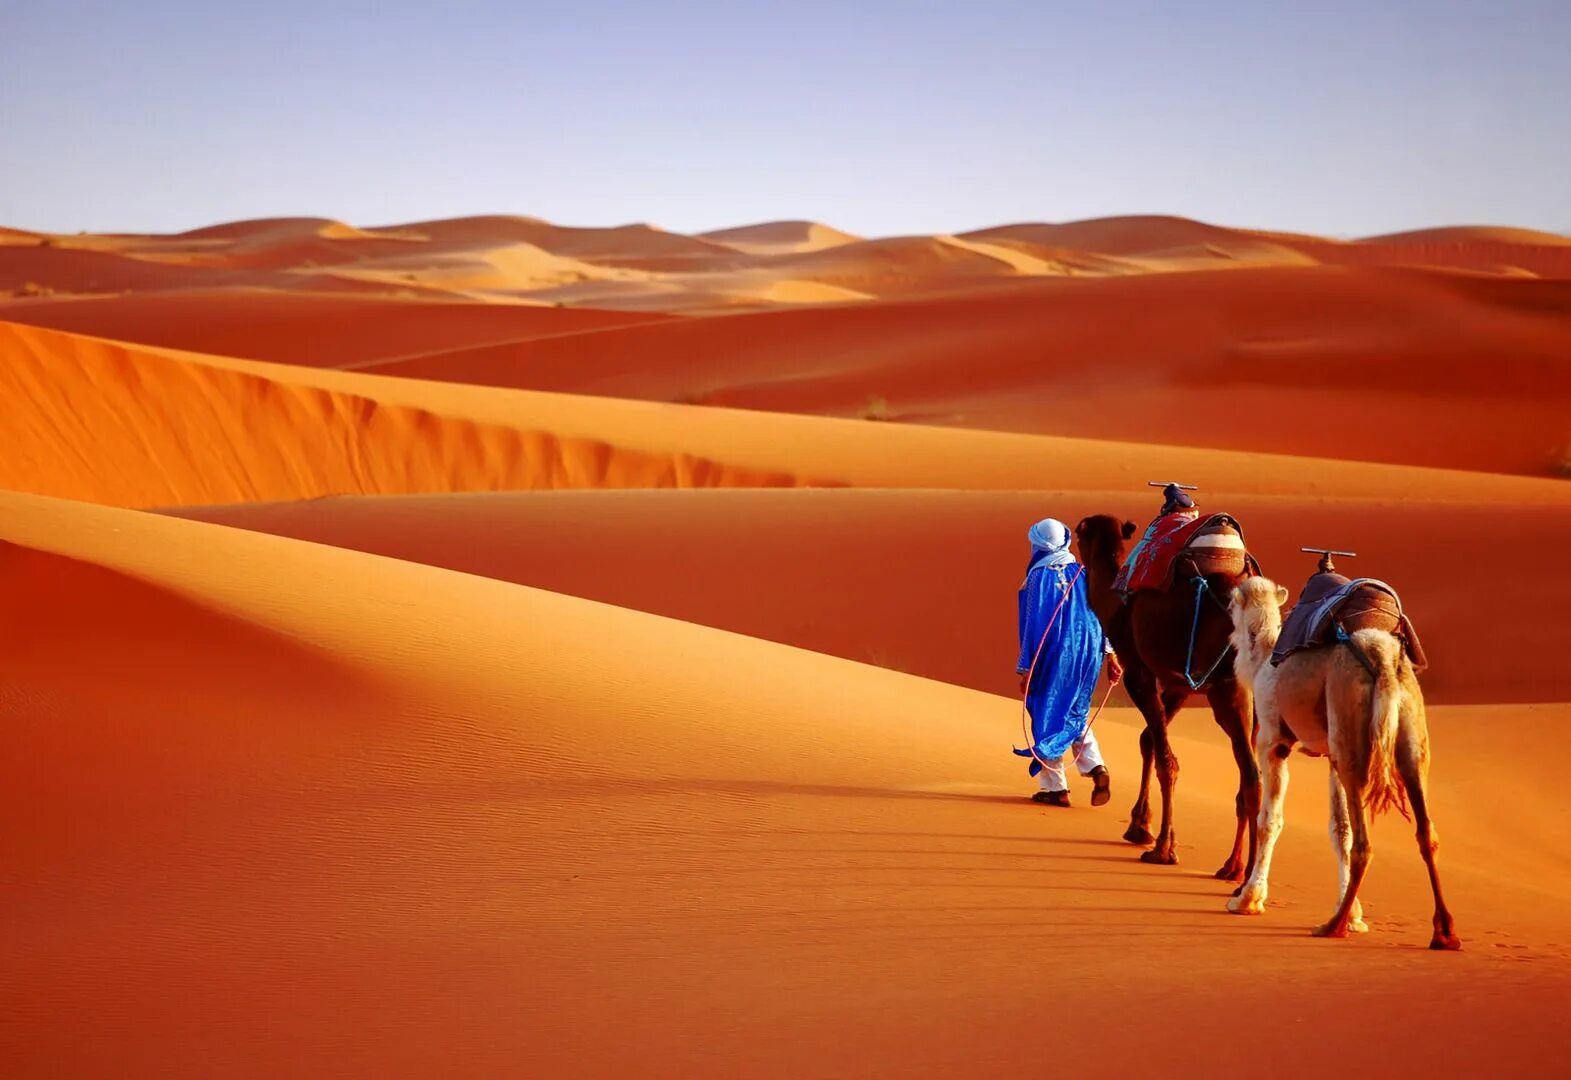 Тема караван. Мерзуга Марокко. Марокко пустыня Караваны. Караван марокканских верблюдов дромедаров. Марокко сахара.